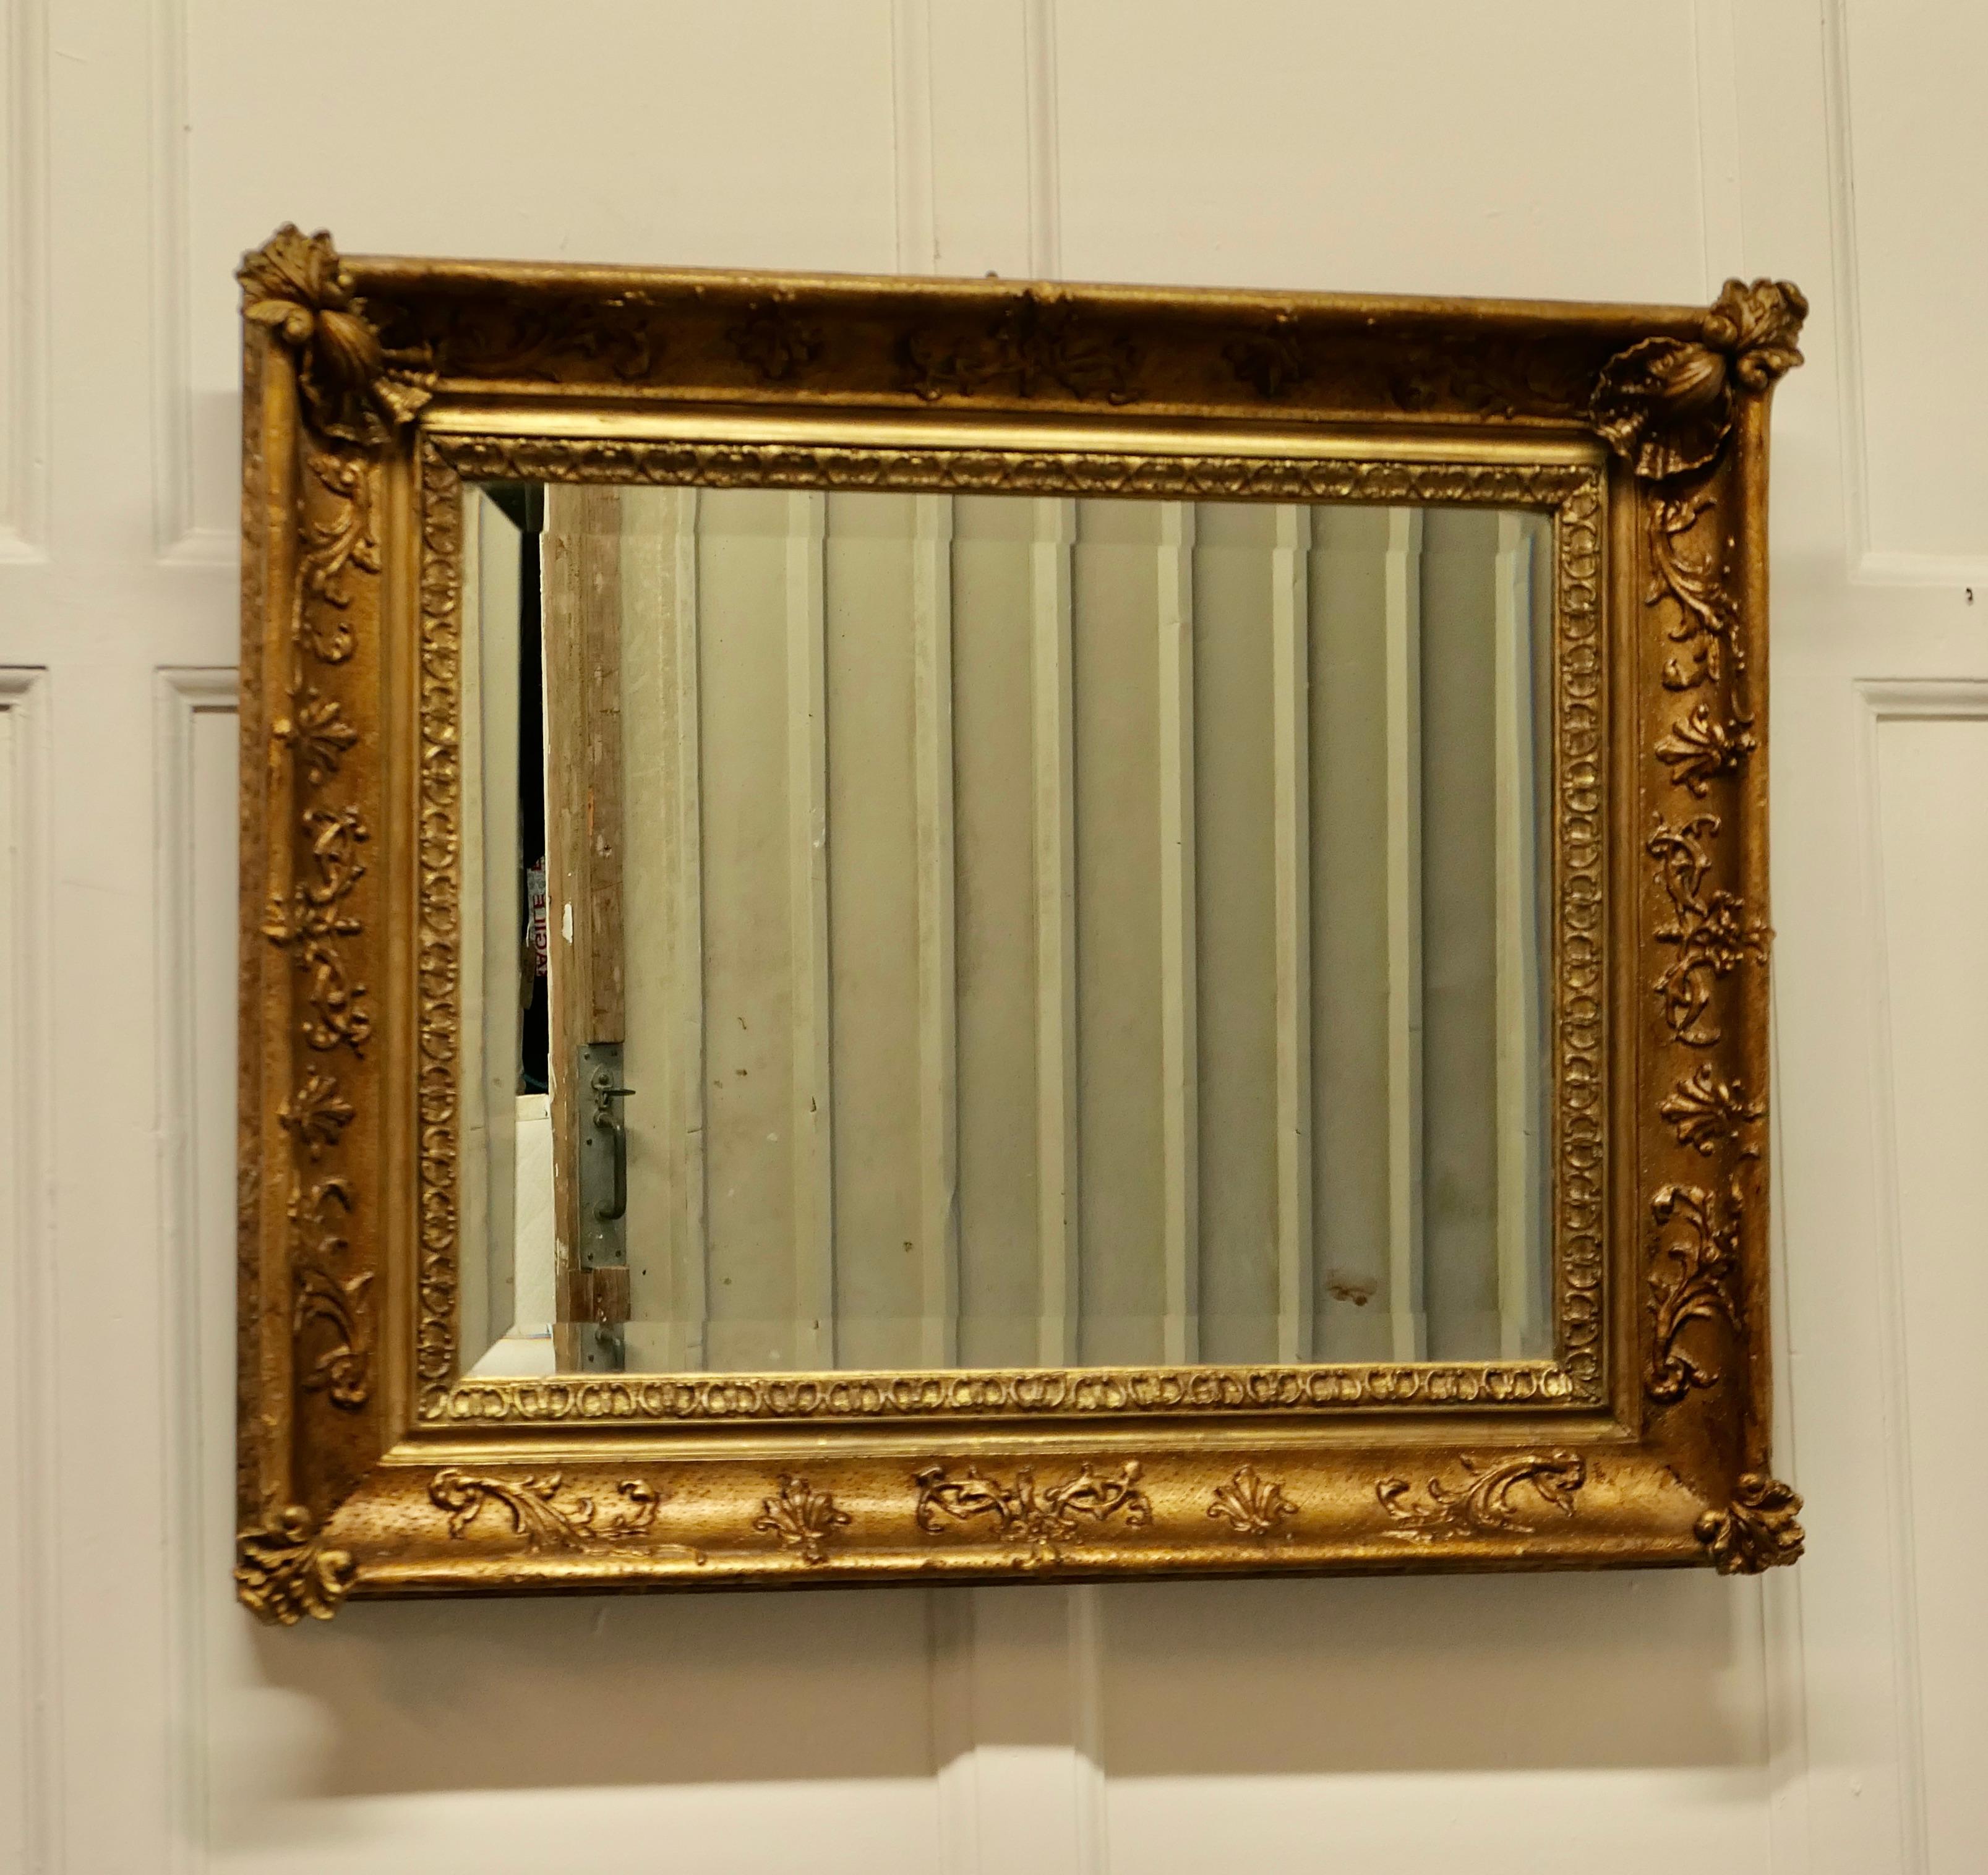 Schöner quadratischer vergoldeter Rokoko-Wandspiegel.

Der Spiegel ist in einem vergoldeten Rokoko-Stil Frame, es ist fast quadratisch in Form mit einem 4 